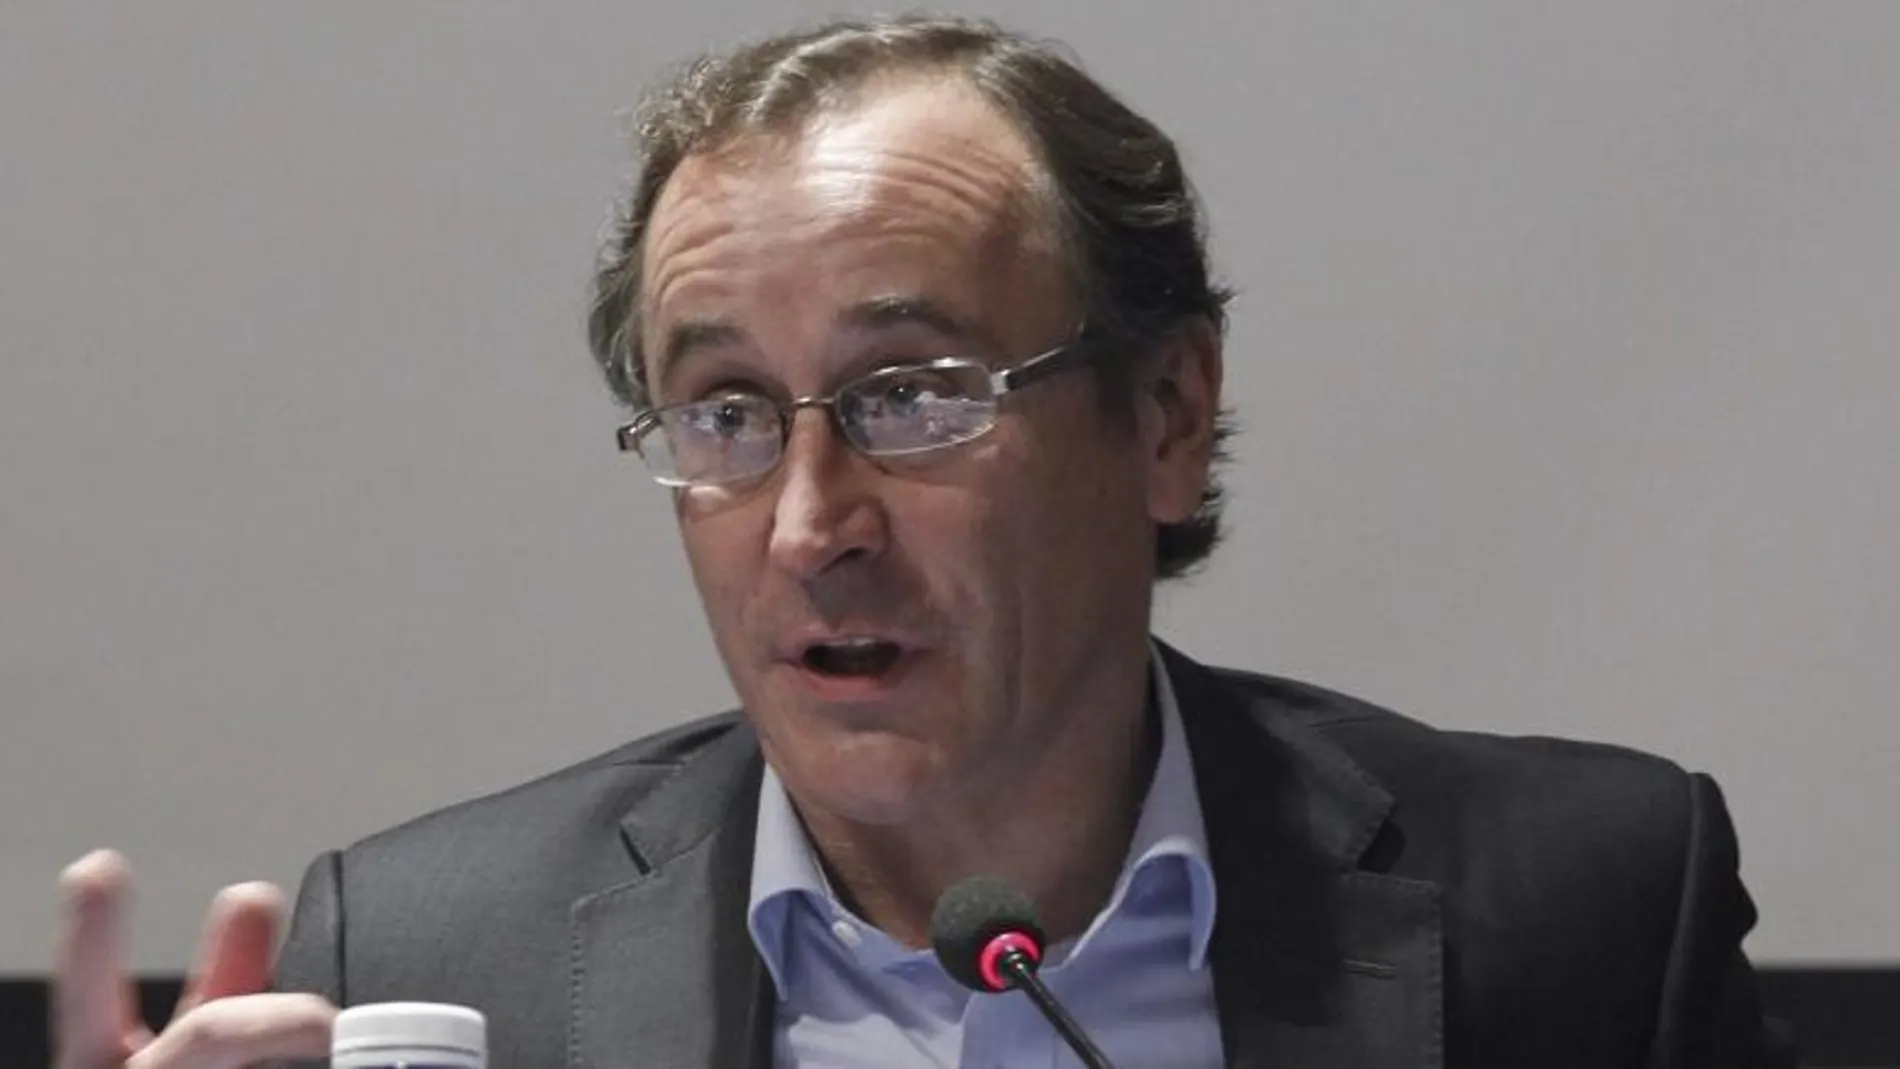 El portavoz del PP en el Congreso, Alfonso Alonso, imparte la ponencia "Acercar el Parlamento a los ciudadanos", en el curso "Repensar la política para generar confianza", en los cursos de verano de El Escorial